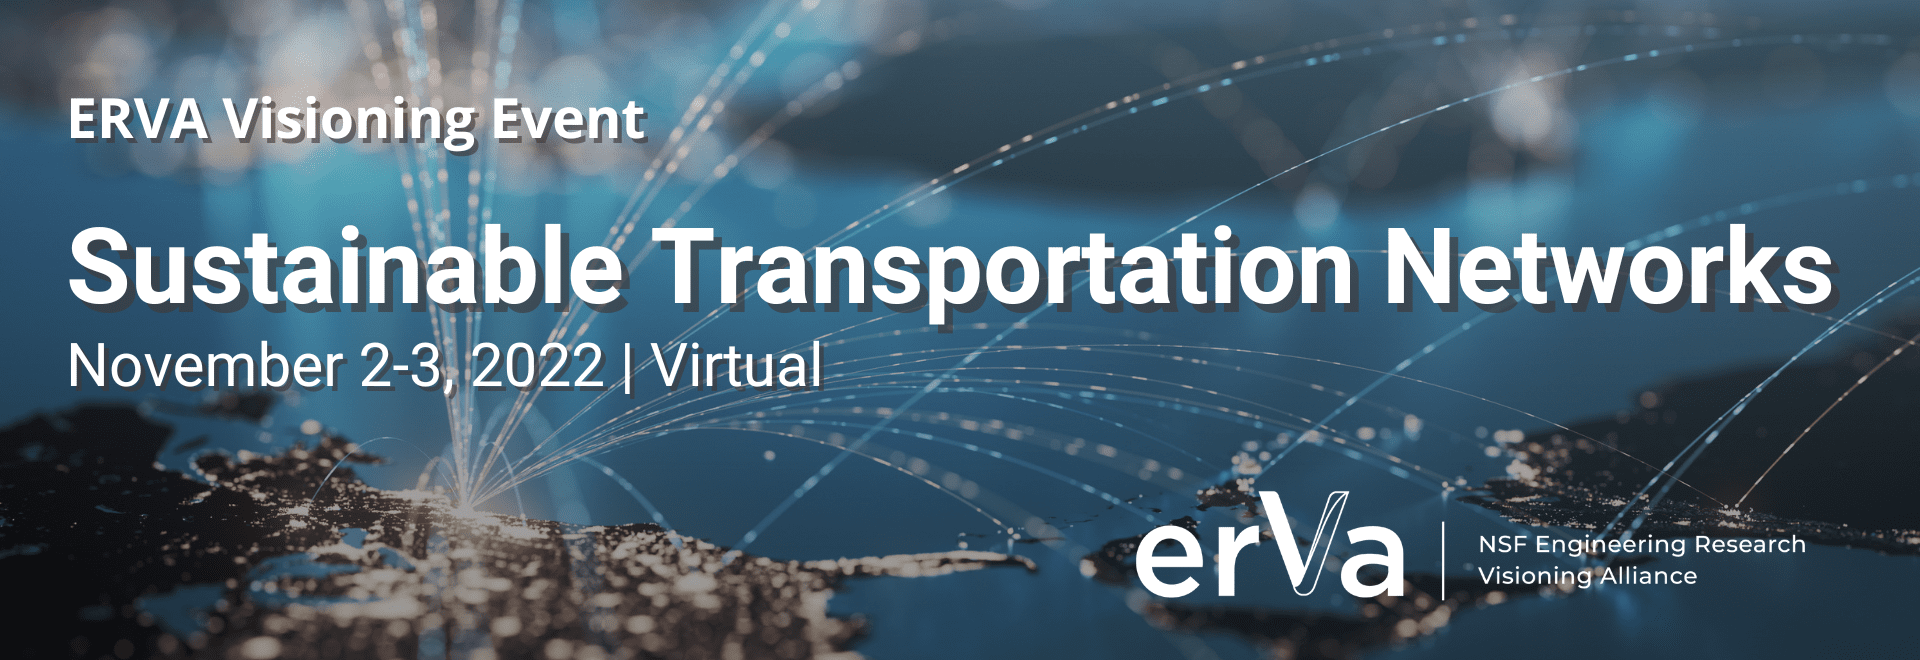 Website-header-erva-visioning-transportation-1